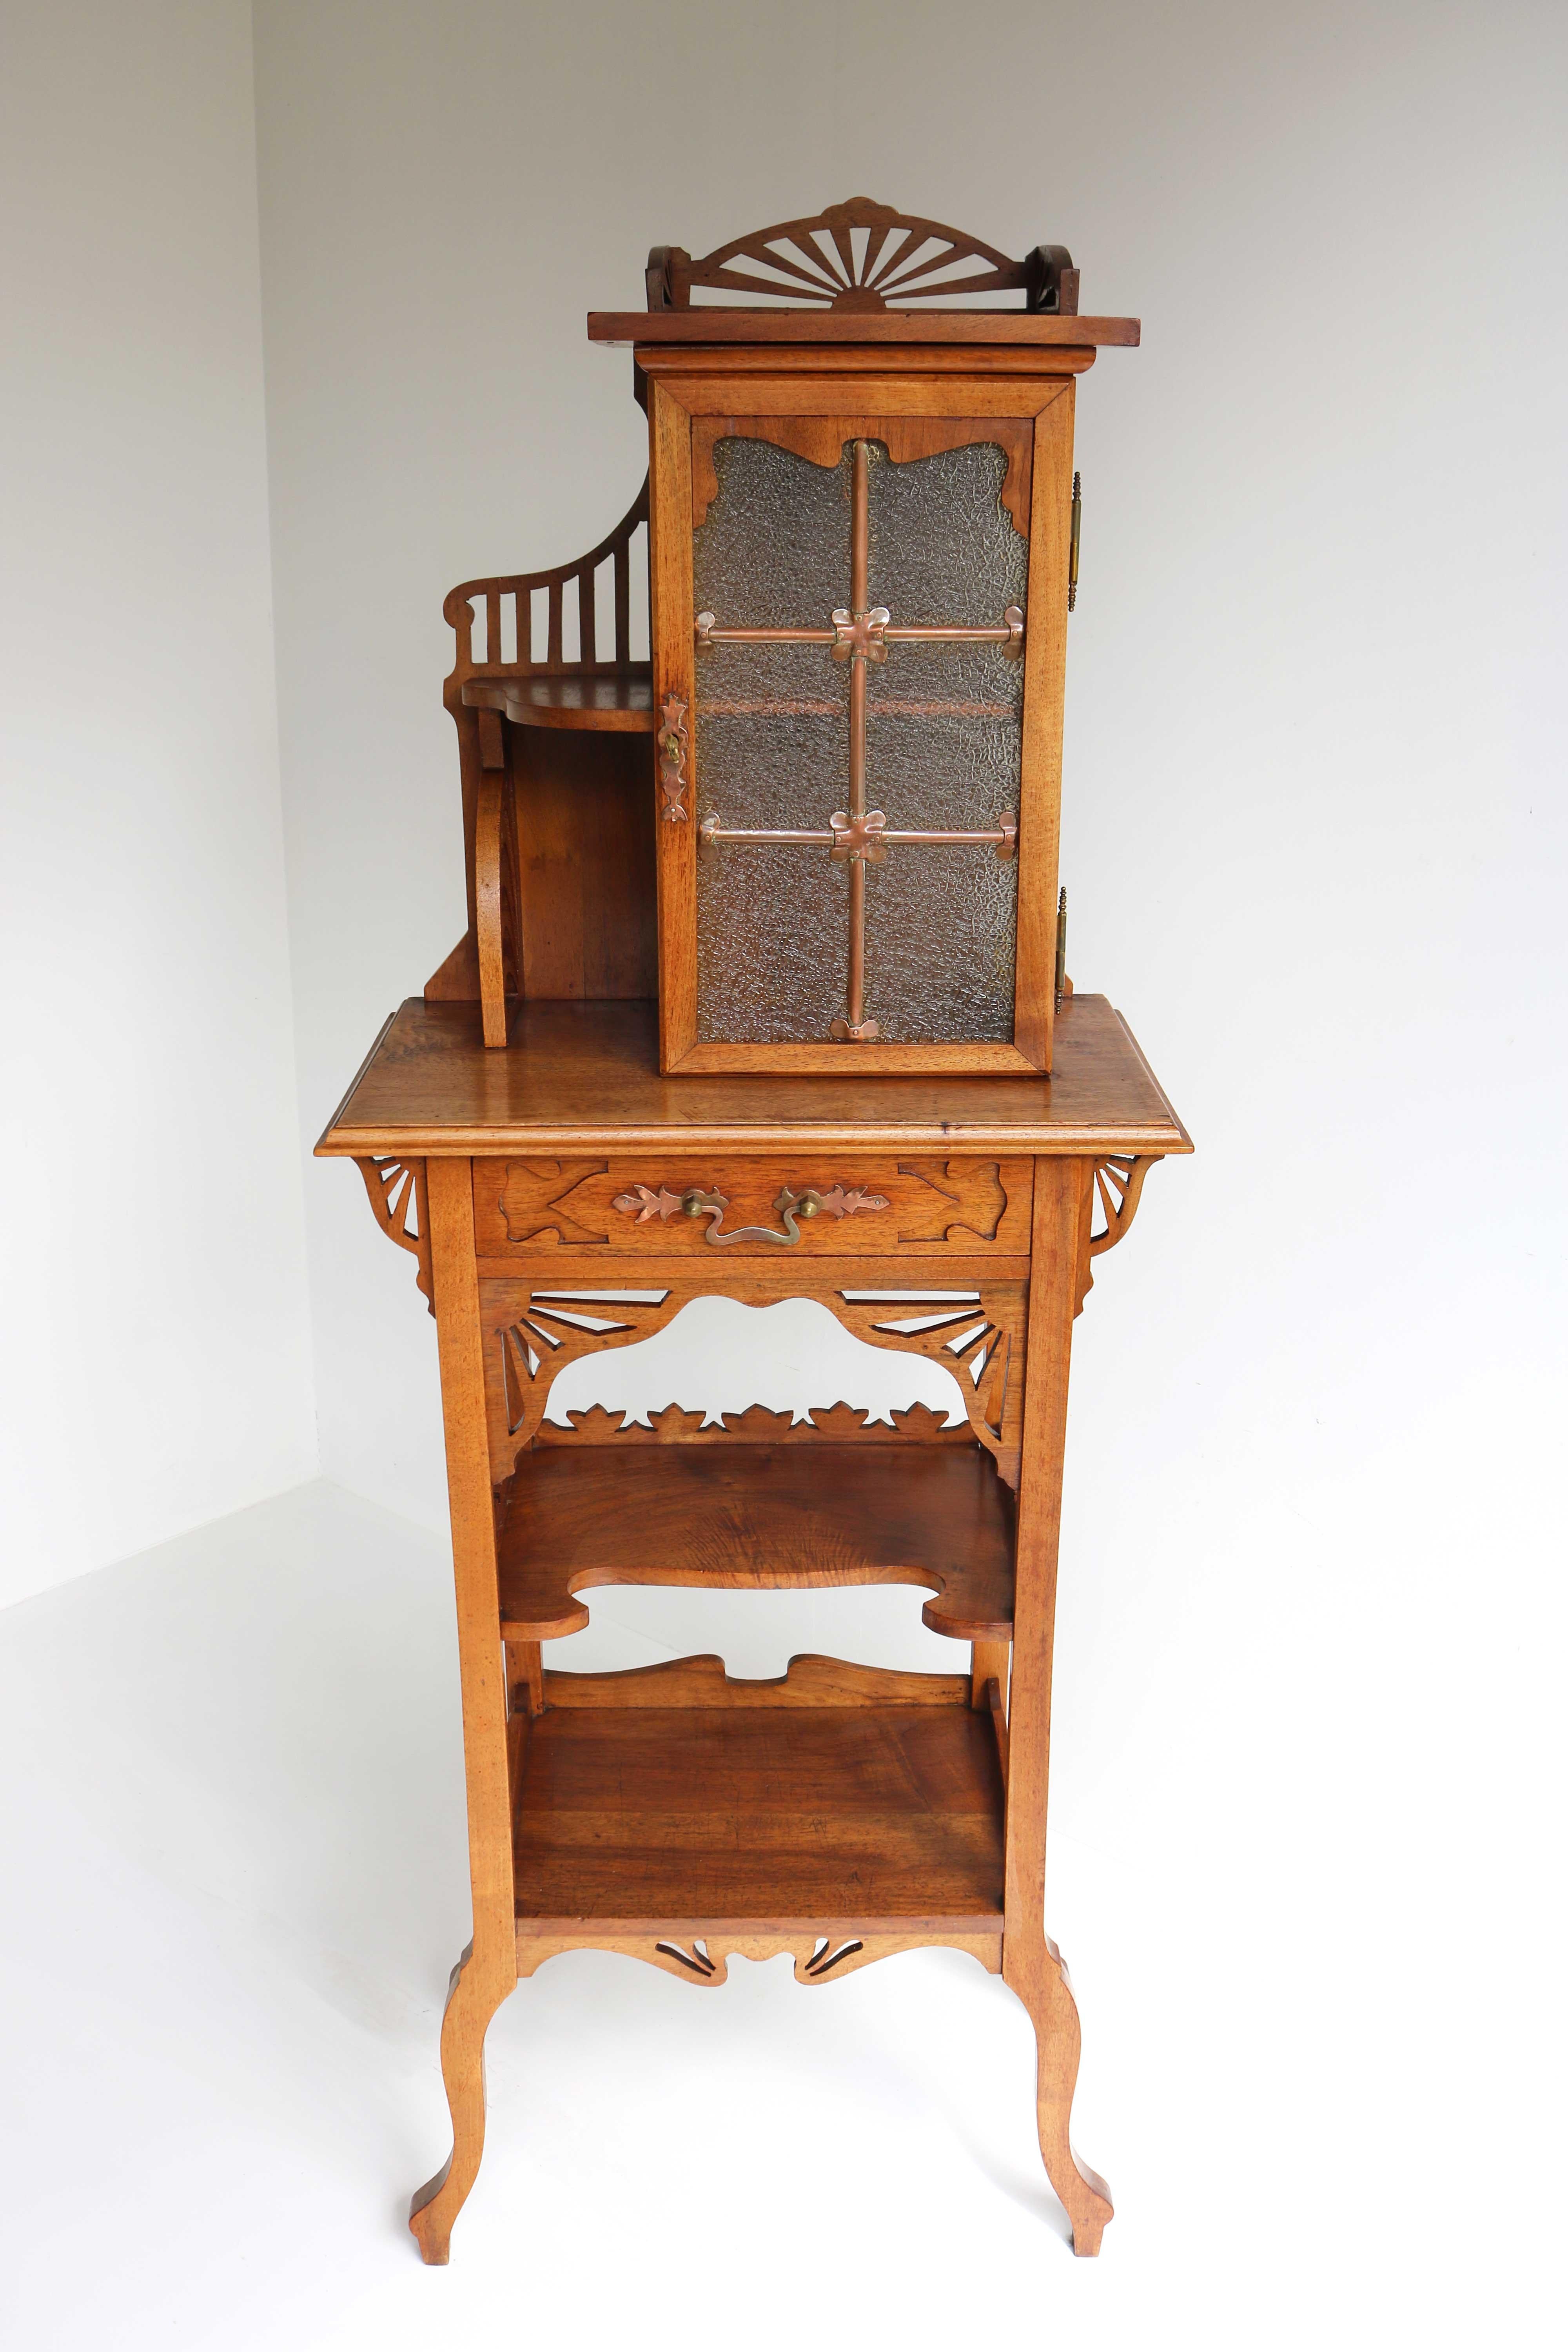 Dieses wunderbare Möbelstück ist ein echter Blickfang in einem Arts & Crafts oder Art Nouveau Haus! 
Ungewöhnlicher, seltener kleiner Schrank, ca. 1900-1910. Selten wegen seiner Größe und Qualität!
Vielseitige Möbel, die in verschiedenen Bereichen